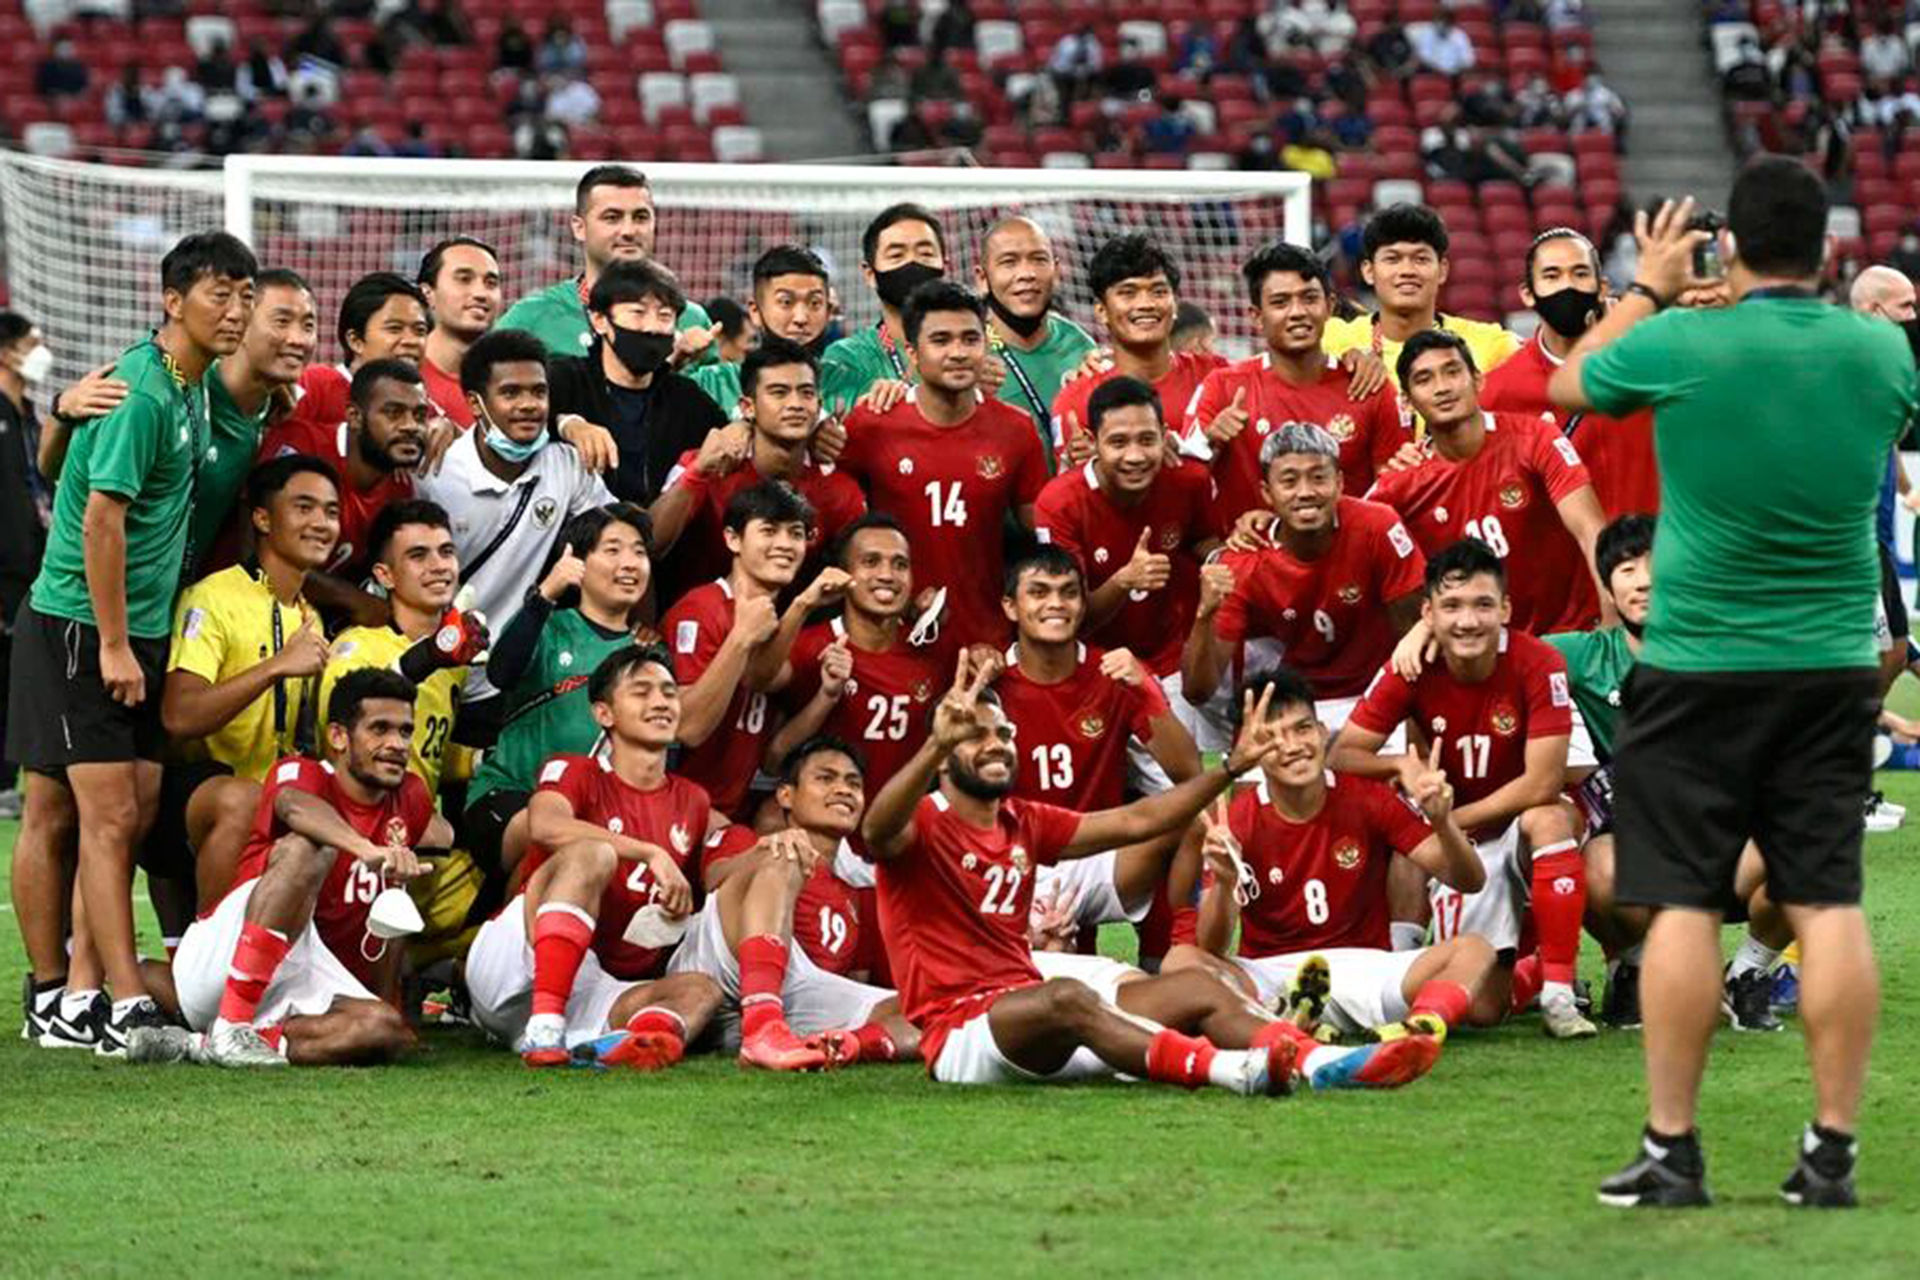 منتخب إندونيسيا بكأس آسيا 2023.. طموحات كبيرة وإمكانيات متواضعة | رياضة – البوكس نيوز